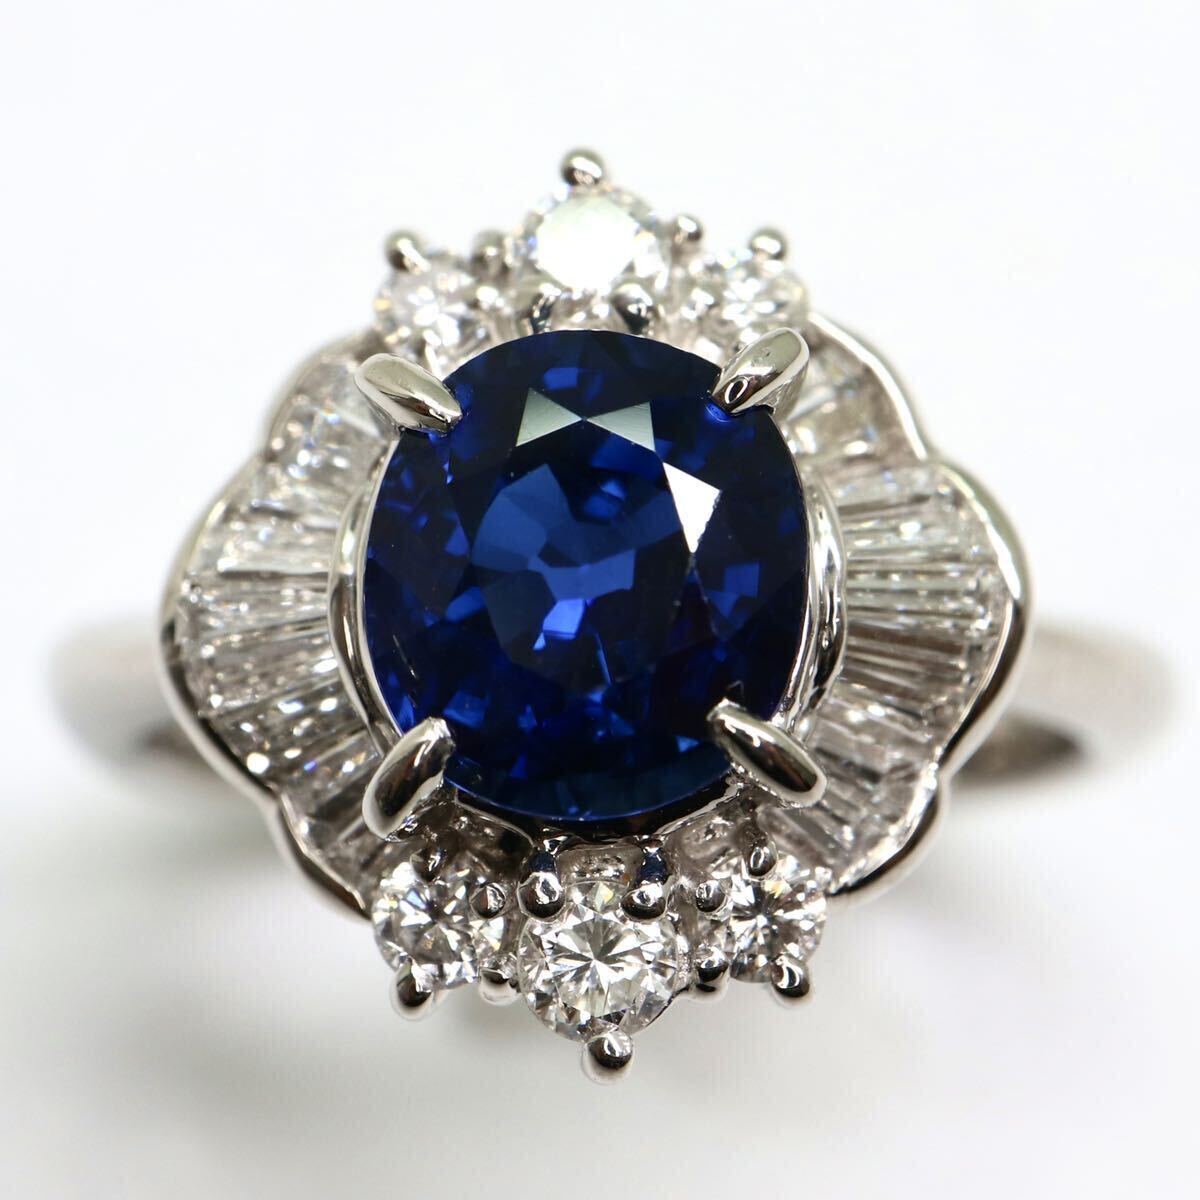 ソーティング付き!!豪華!!《Pt900 天然ダイヤモンド/天然サファイアリング》A 10.5号 6.4g sapphire diamond jewelry ring EG8/ZZの画像1